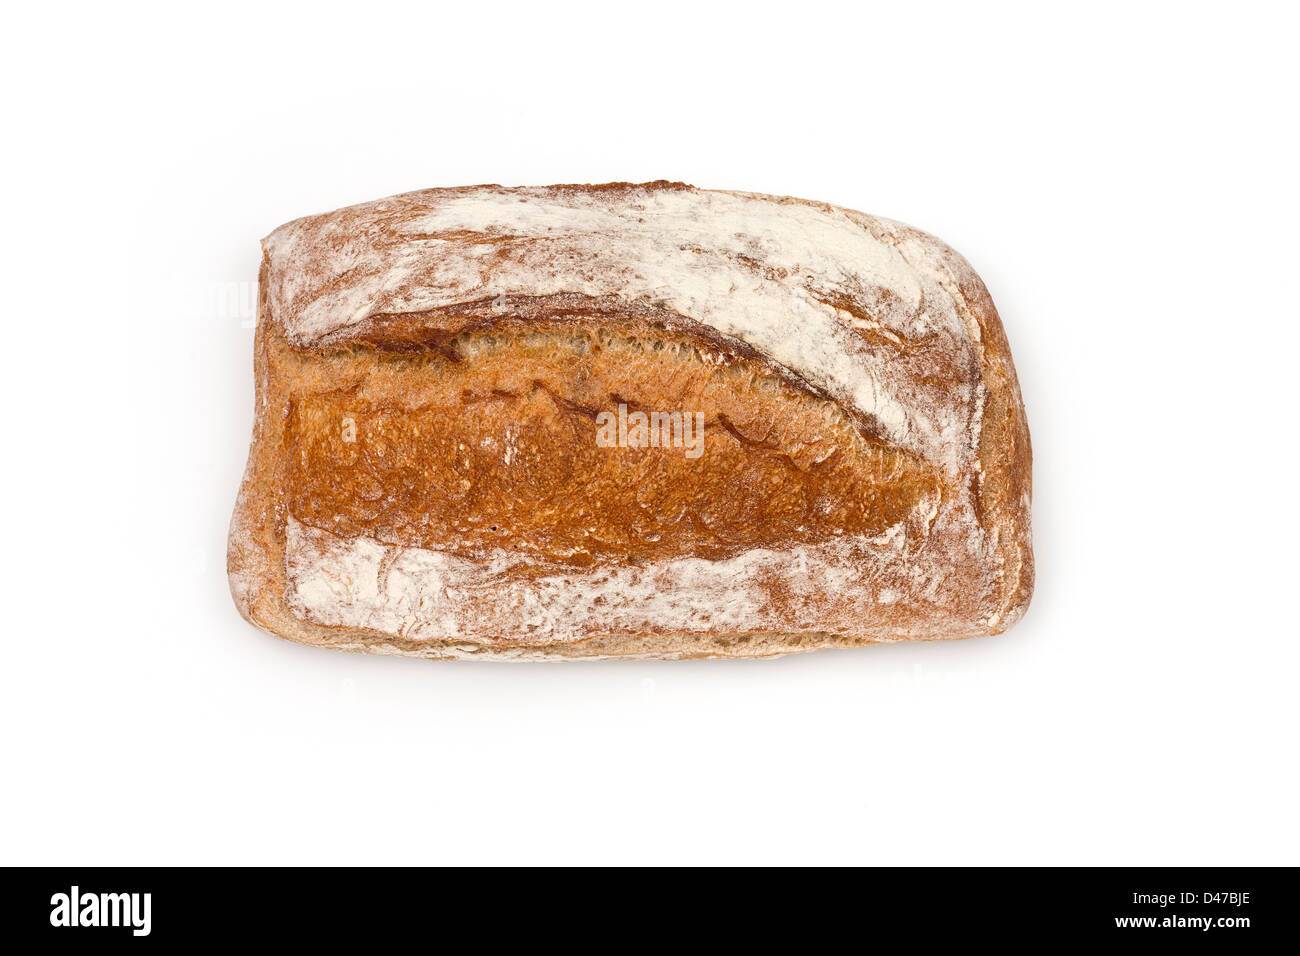 Una pagnotta di pane rustico, fotografato su uno sfondo bianco (Jouannet impresa a Vichy - Francia). Dolore en studio sur fond blanc. Foto Stock